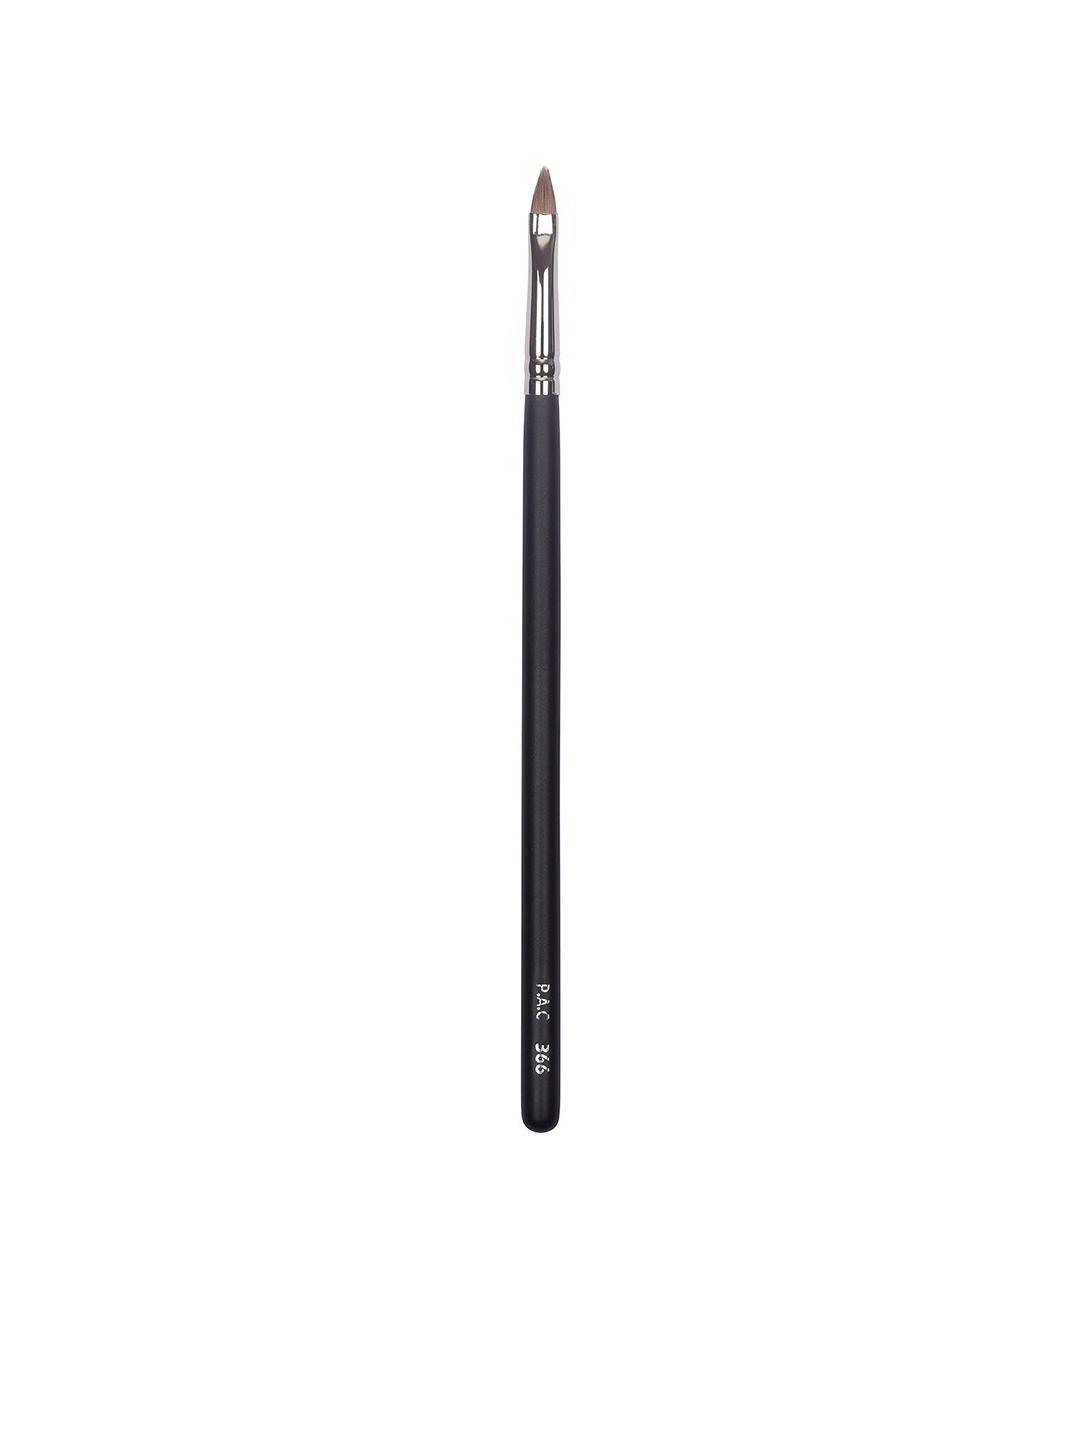 pac lip brush - 366